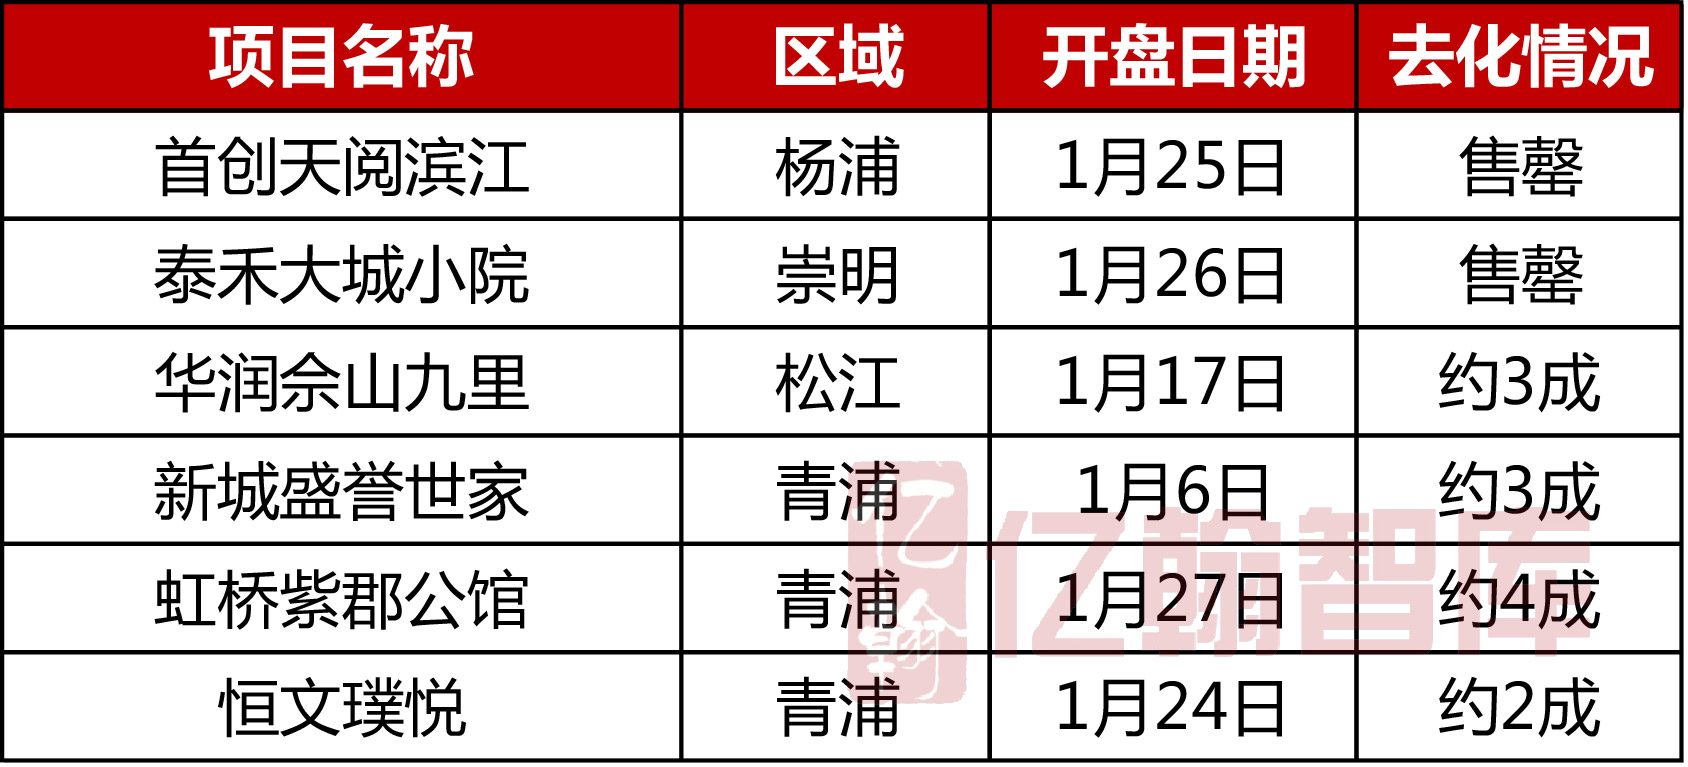 2019年1月中国典型房企单项目销售业绩TOP100 开局不利 整体去化不足4成-中国网地产